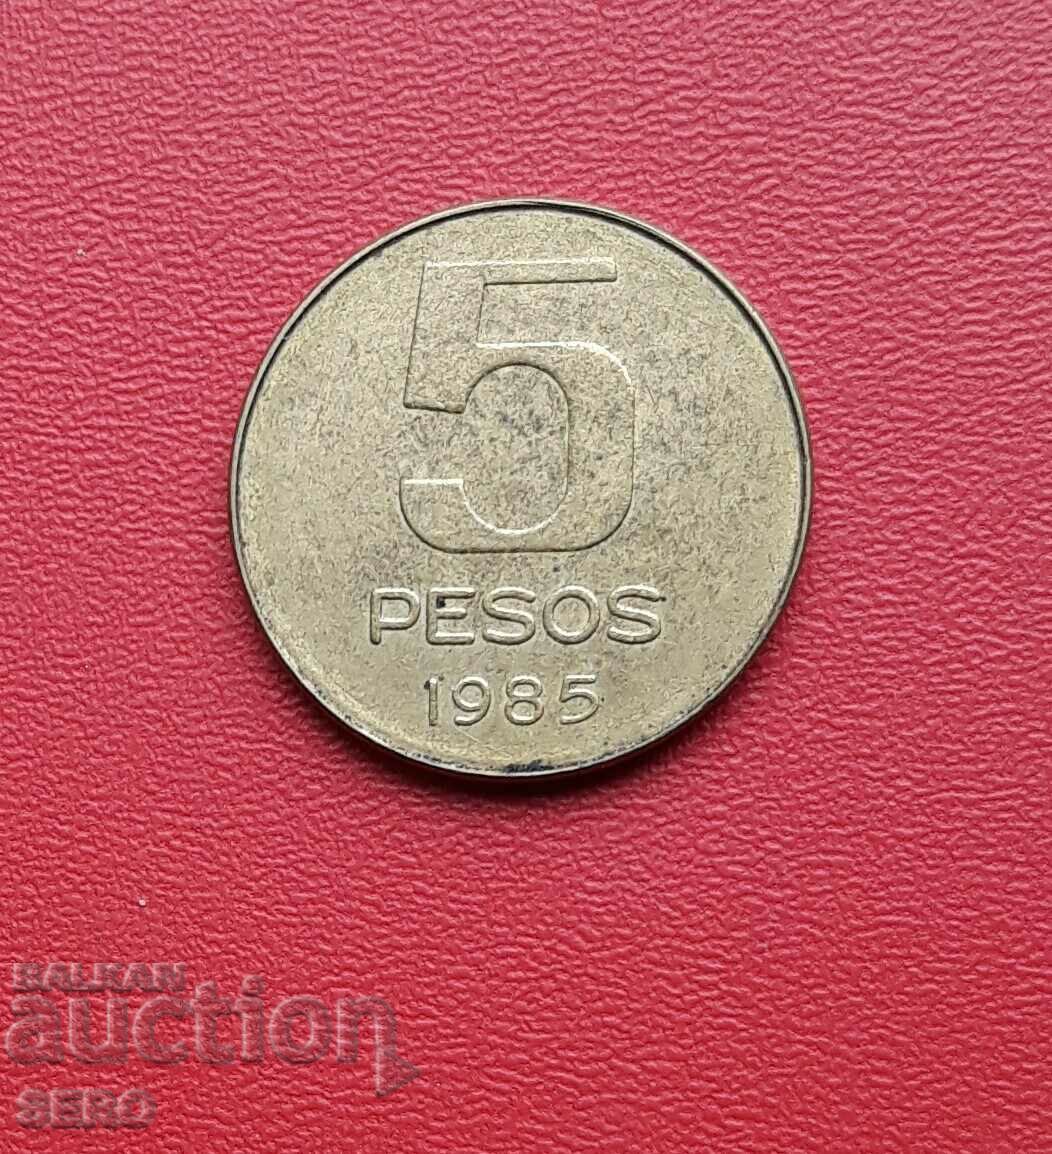 Argentina - 5 pesos 1985